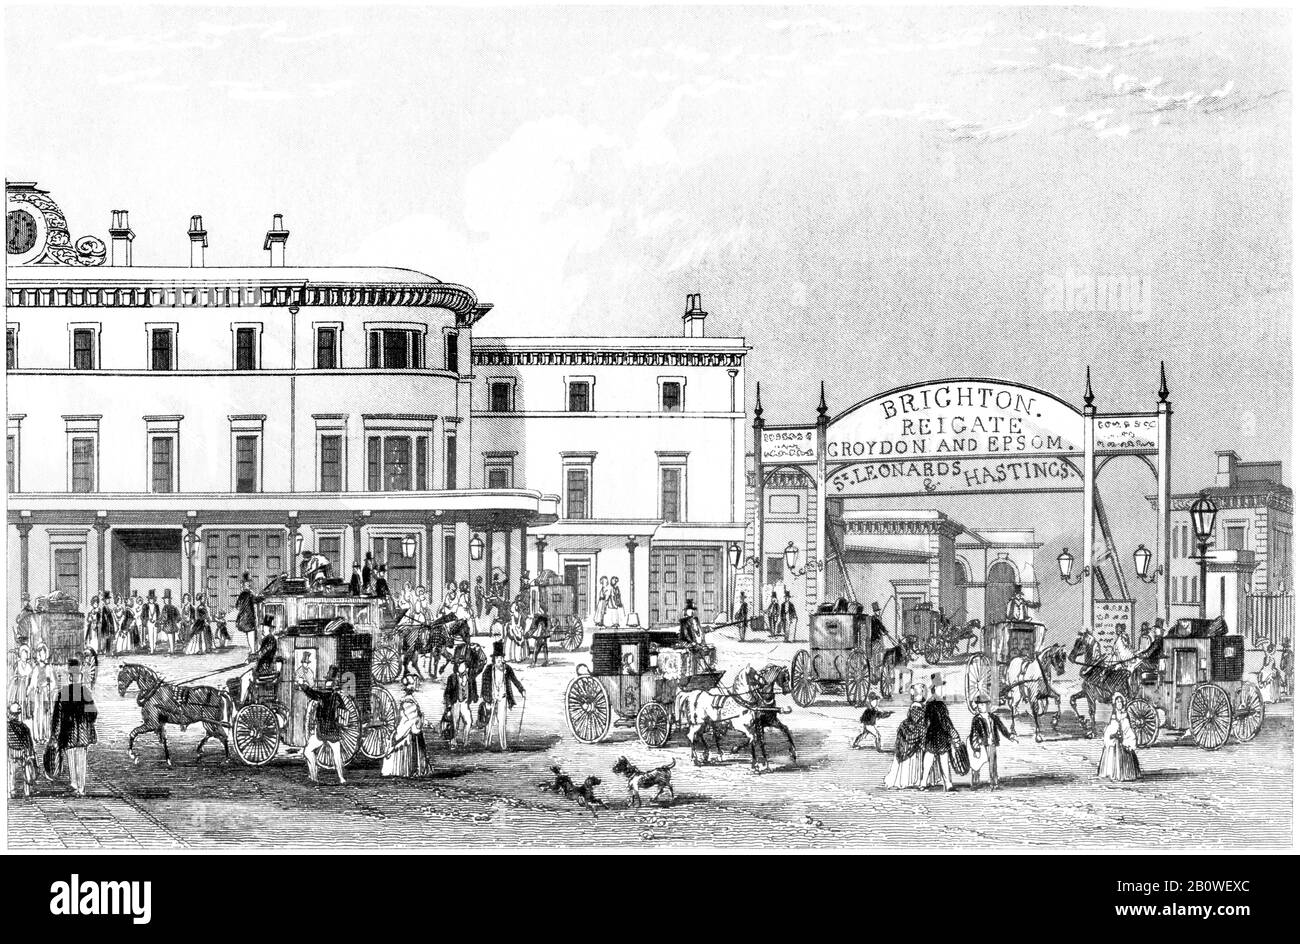 Eine Gravur des South Eastern Railway Station London Bridge UK, die in hoher Auflösung von einem Buch gescannt wurde, das 1851 gedruckt wurde. Für urheberrechtlich frei gehalten. Stockfoto